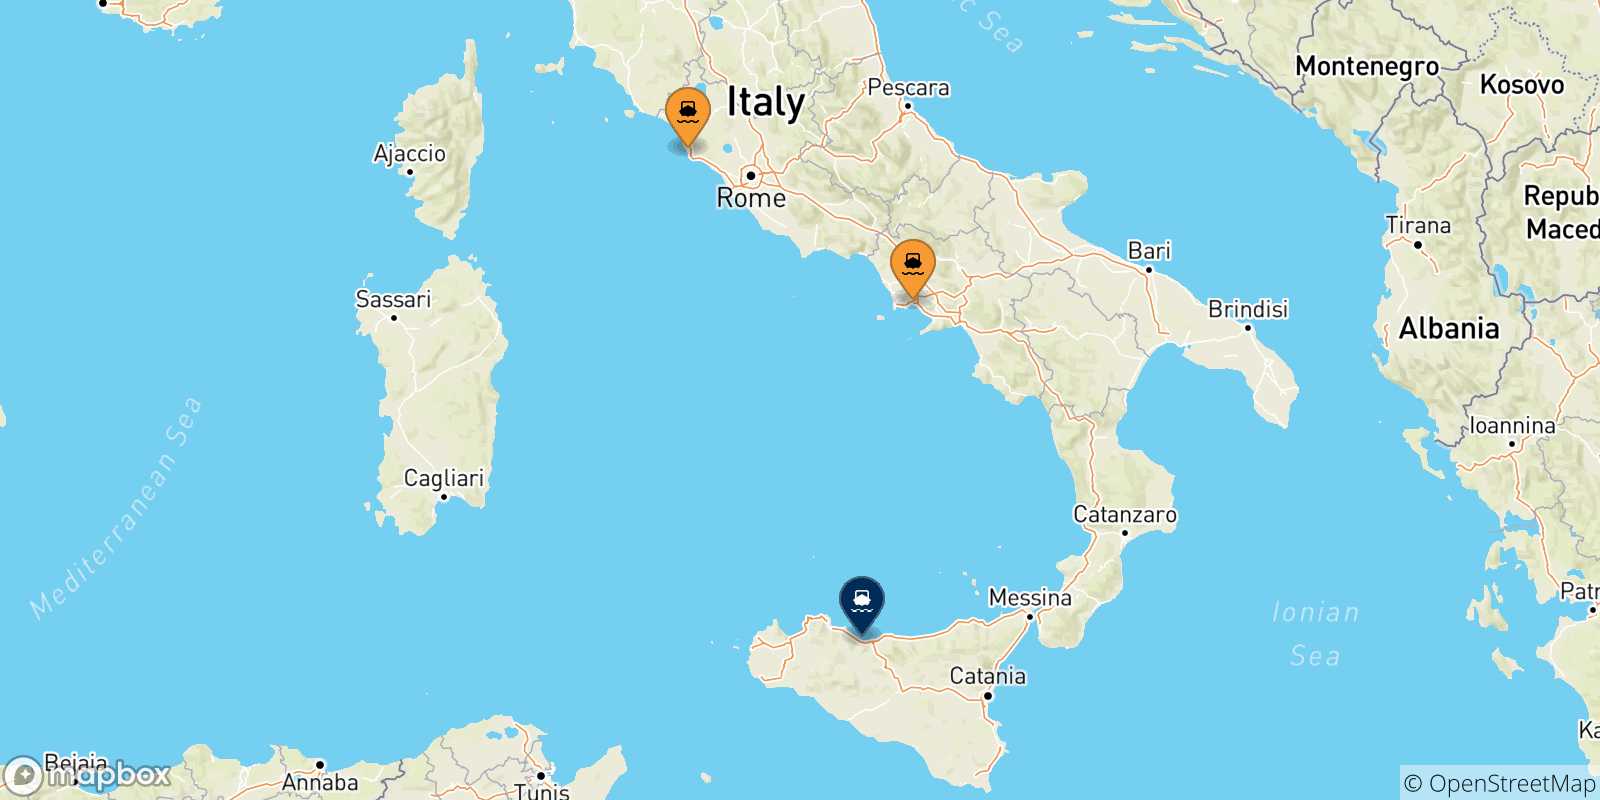 Mappa delle possibili rotte tra l'Italia e Termini Imerese